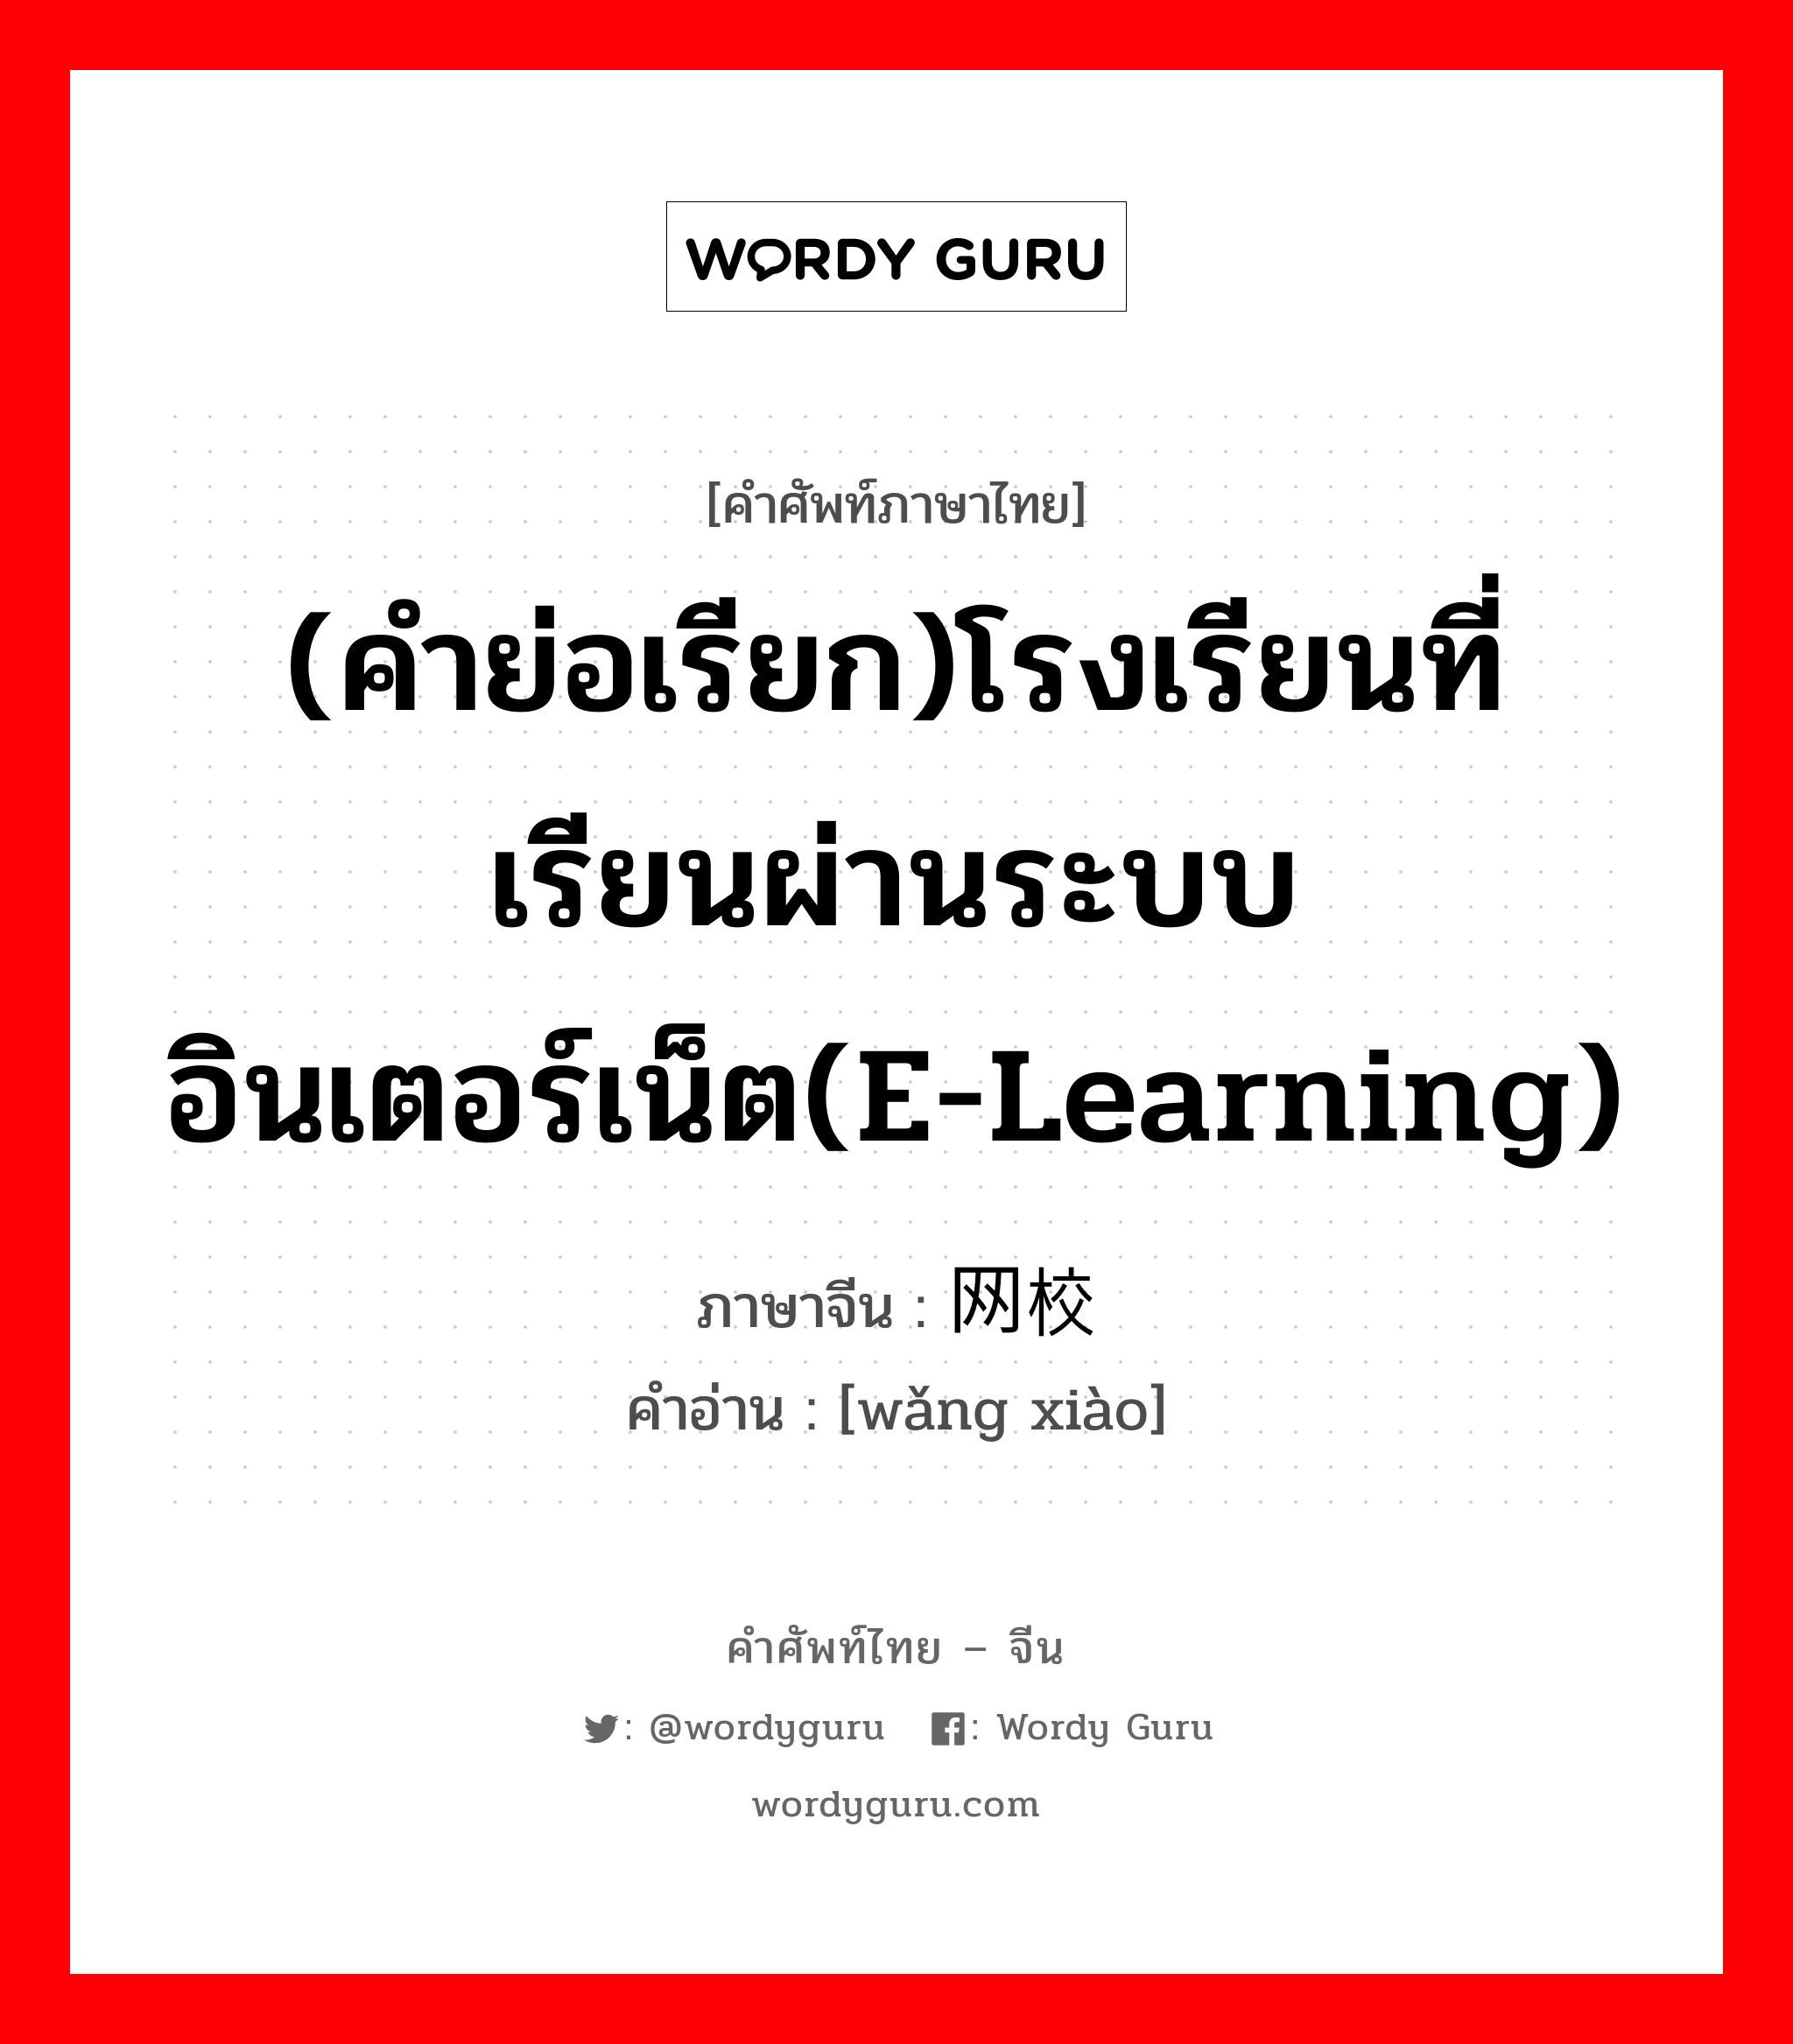 (คำย่อเรียก)โรงเรียนที่เรียนผ่านระบบอินเตอร์เน็ต(E-Learning) ภาษาจีนคืออะไร, คำศัพท์ภาษาไทย - จีน (คำย่อเรียก)โรงเรียนที่เรียนผ่านระบบอินเตอร์เน็ต(E-Learning) ภาษาจีน 网校 คำอ่าน [wǎng xiào]